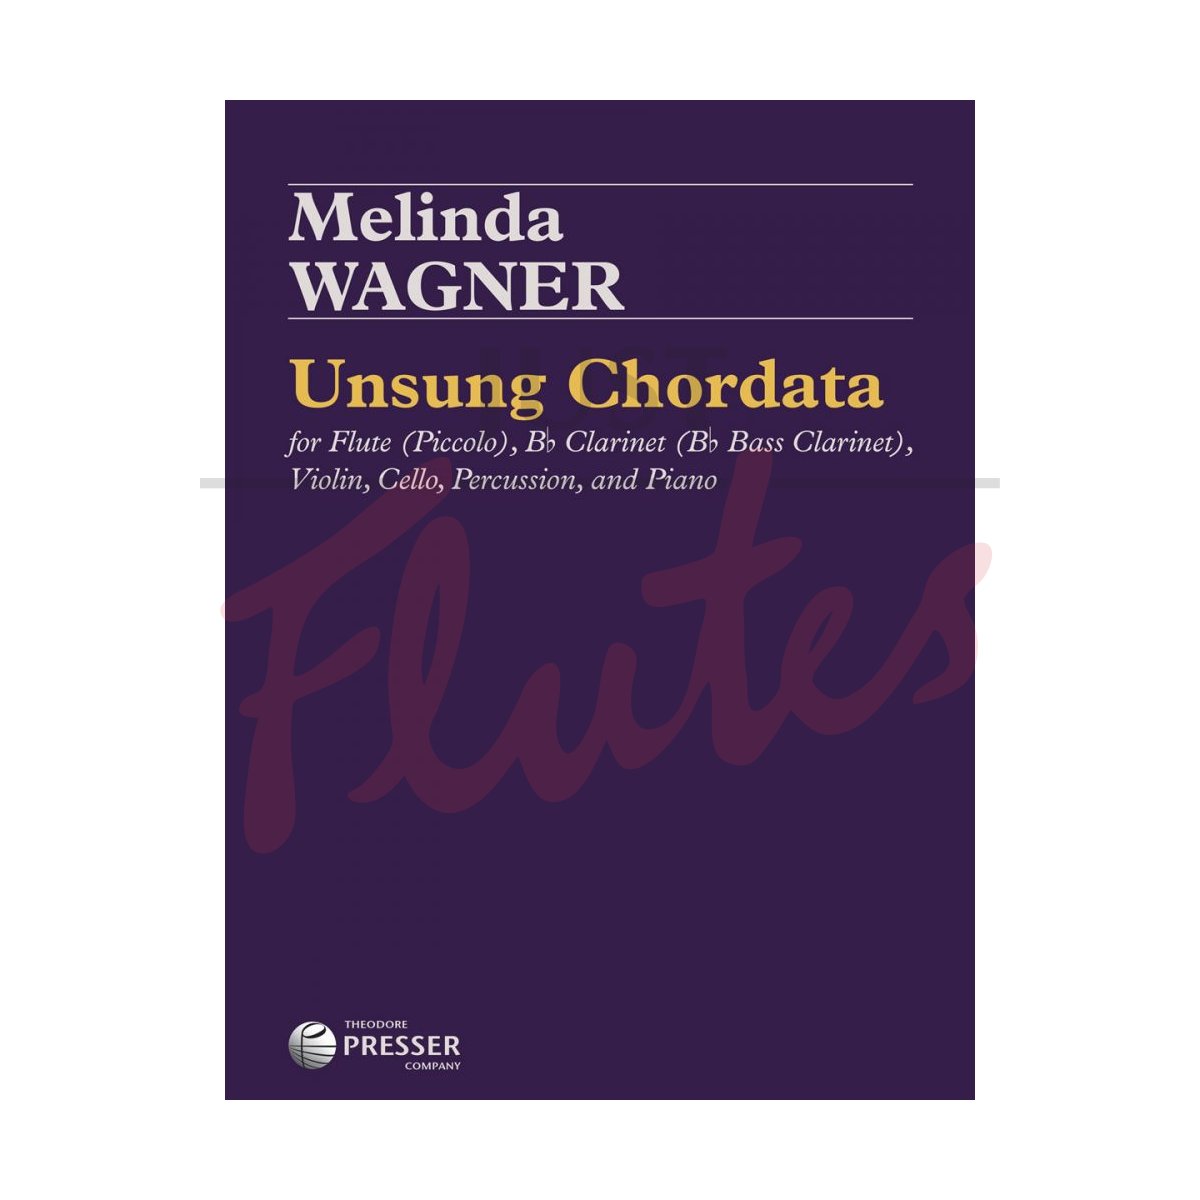 Unsung Chordata for Flute, Clarinet, Violin, Cello, Percussion and Piano